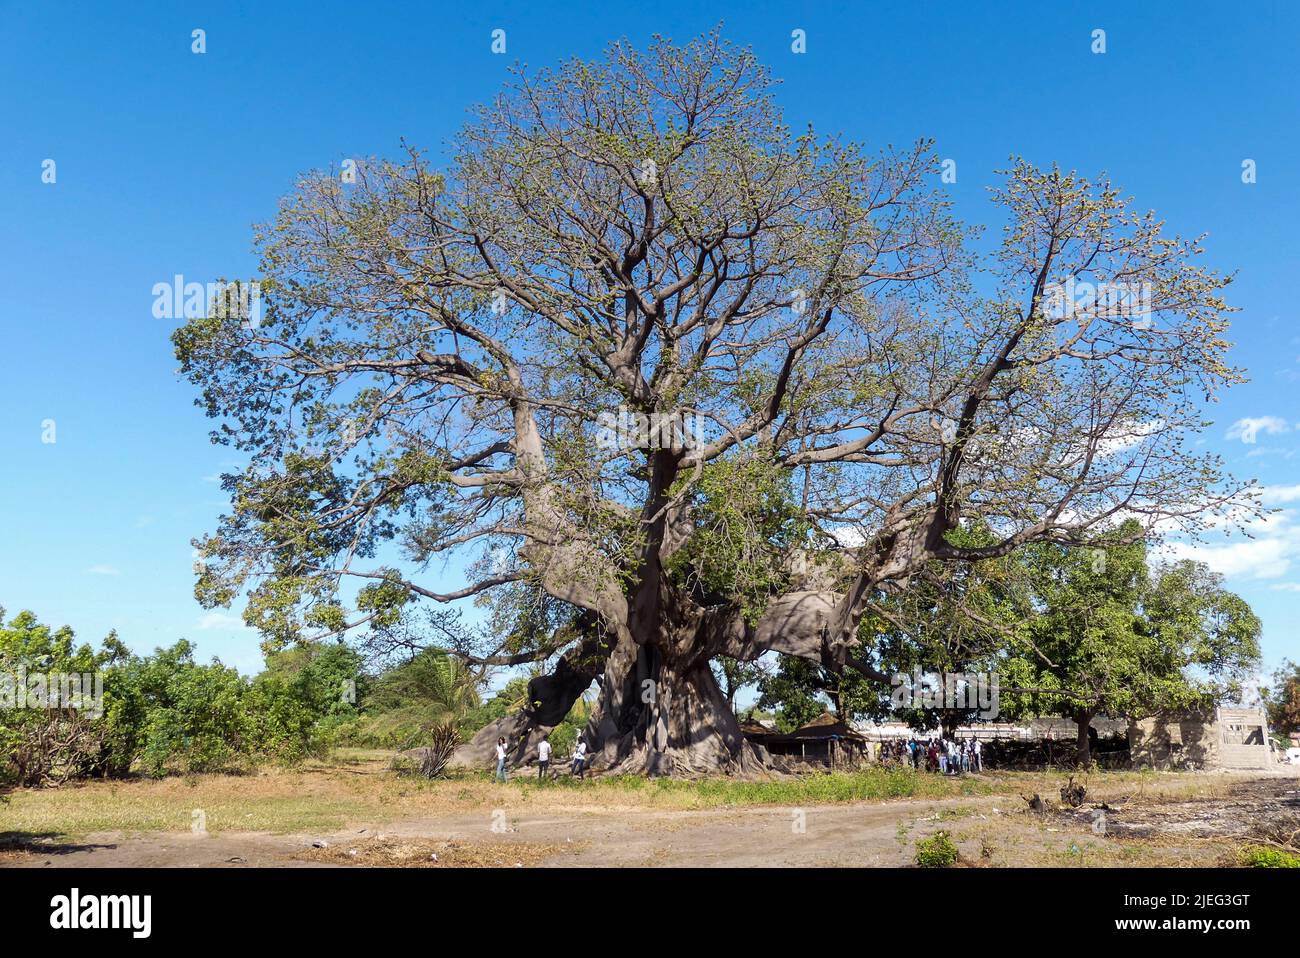 Arbre de baobab (adansonia digitata), l'arbre sacré de Fadial, Sénégal, Afrique. Il a 850 ans et il est assez grand pour que des dizaines de personnes s'y asseyent. Banque D'Images